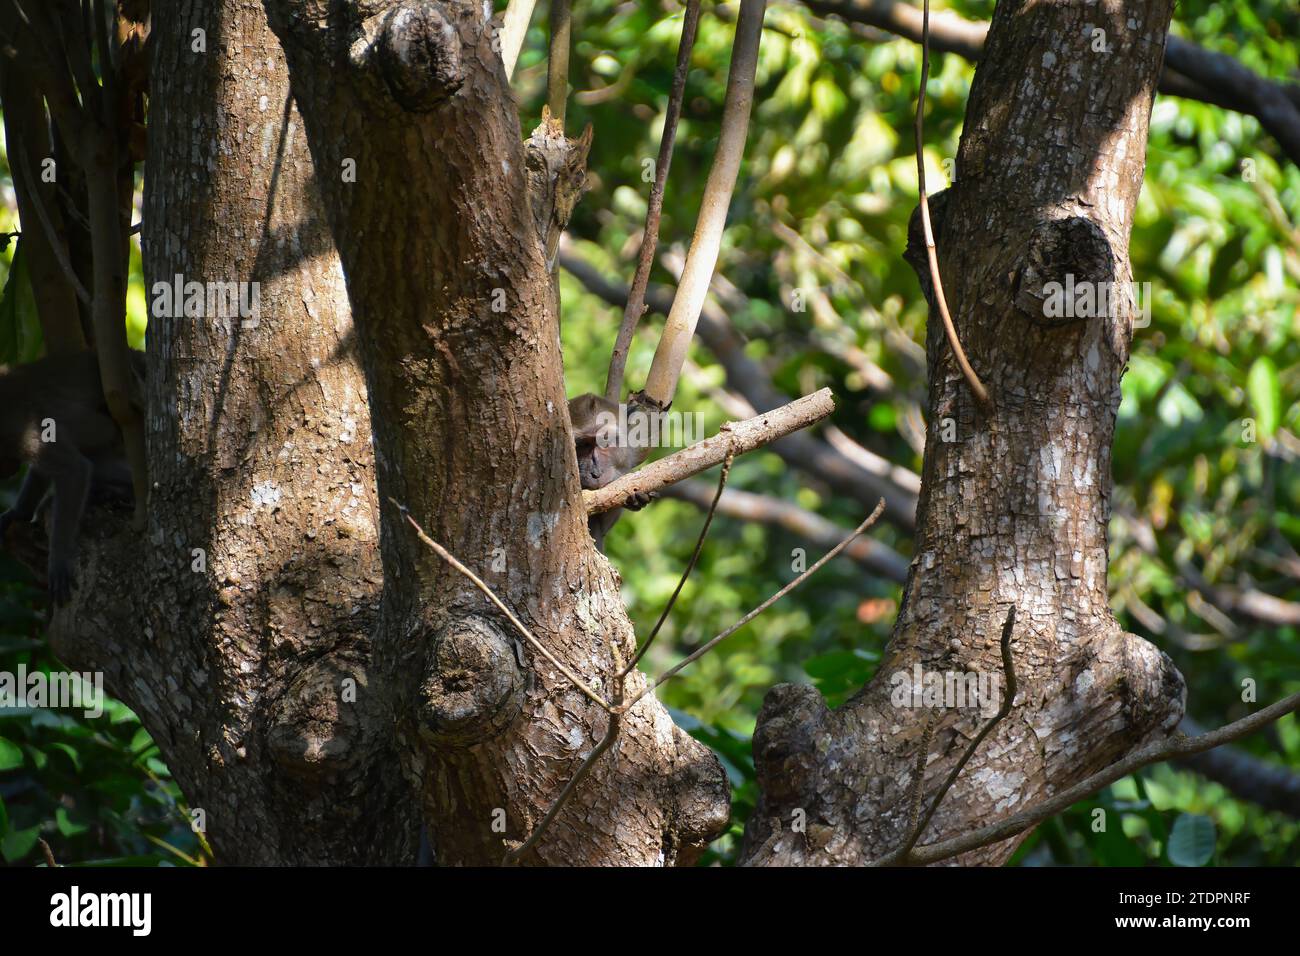 Ein Makaken-Affe bereitet aus einem Holz ein Werkzeug zum Aufsammeln von Insekten vor Stockfoto